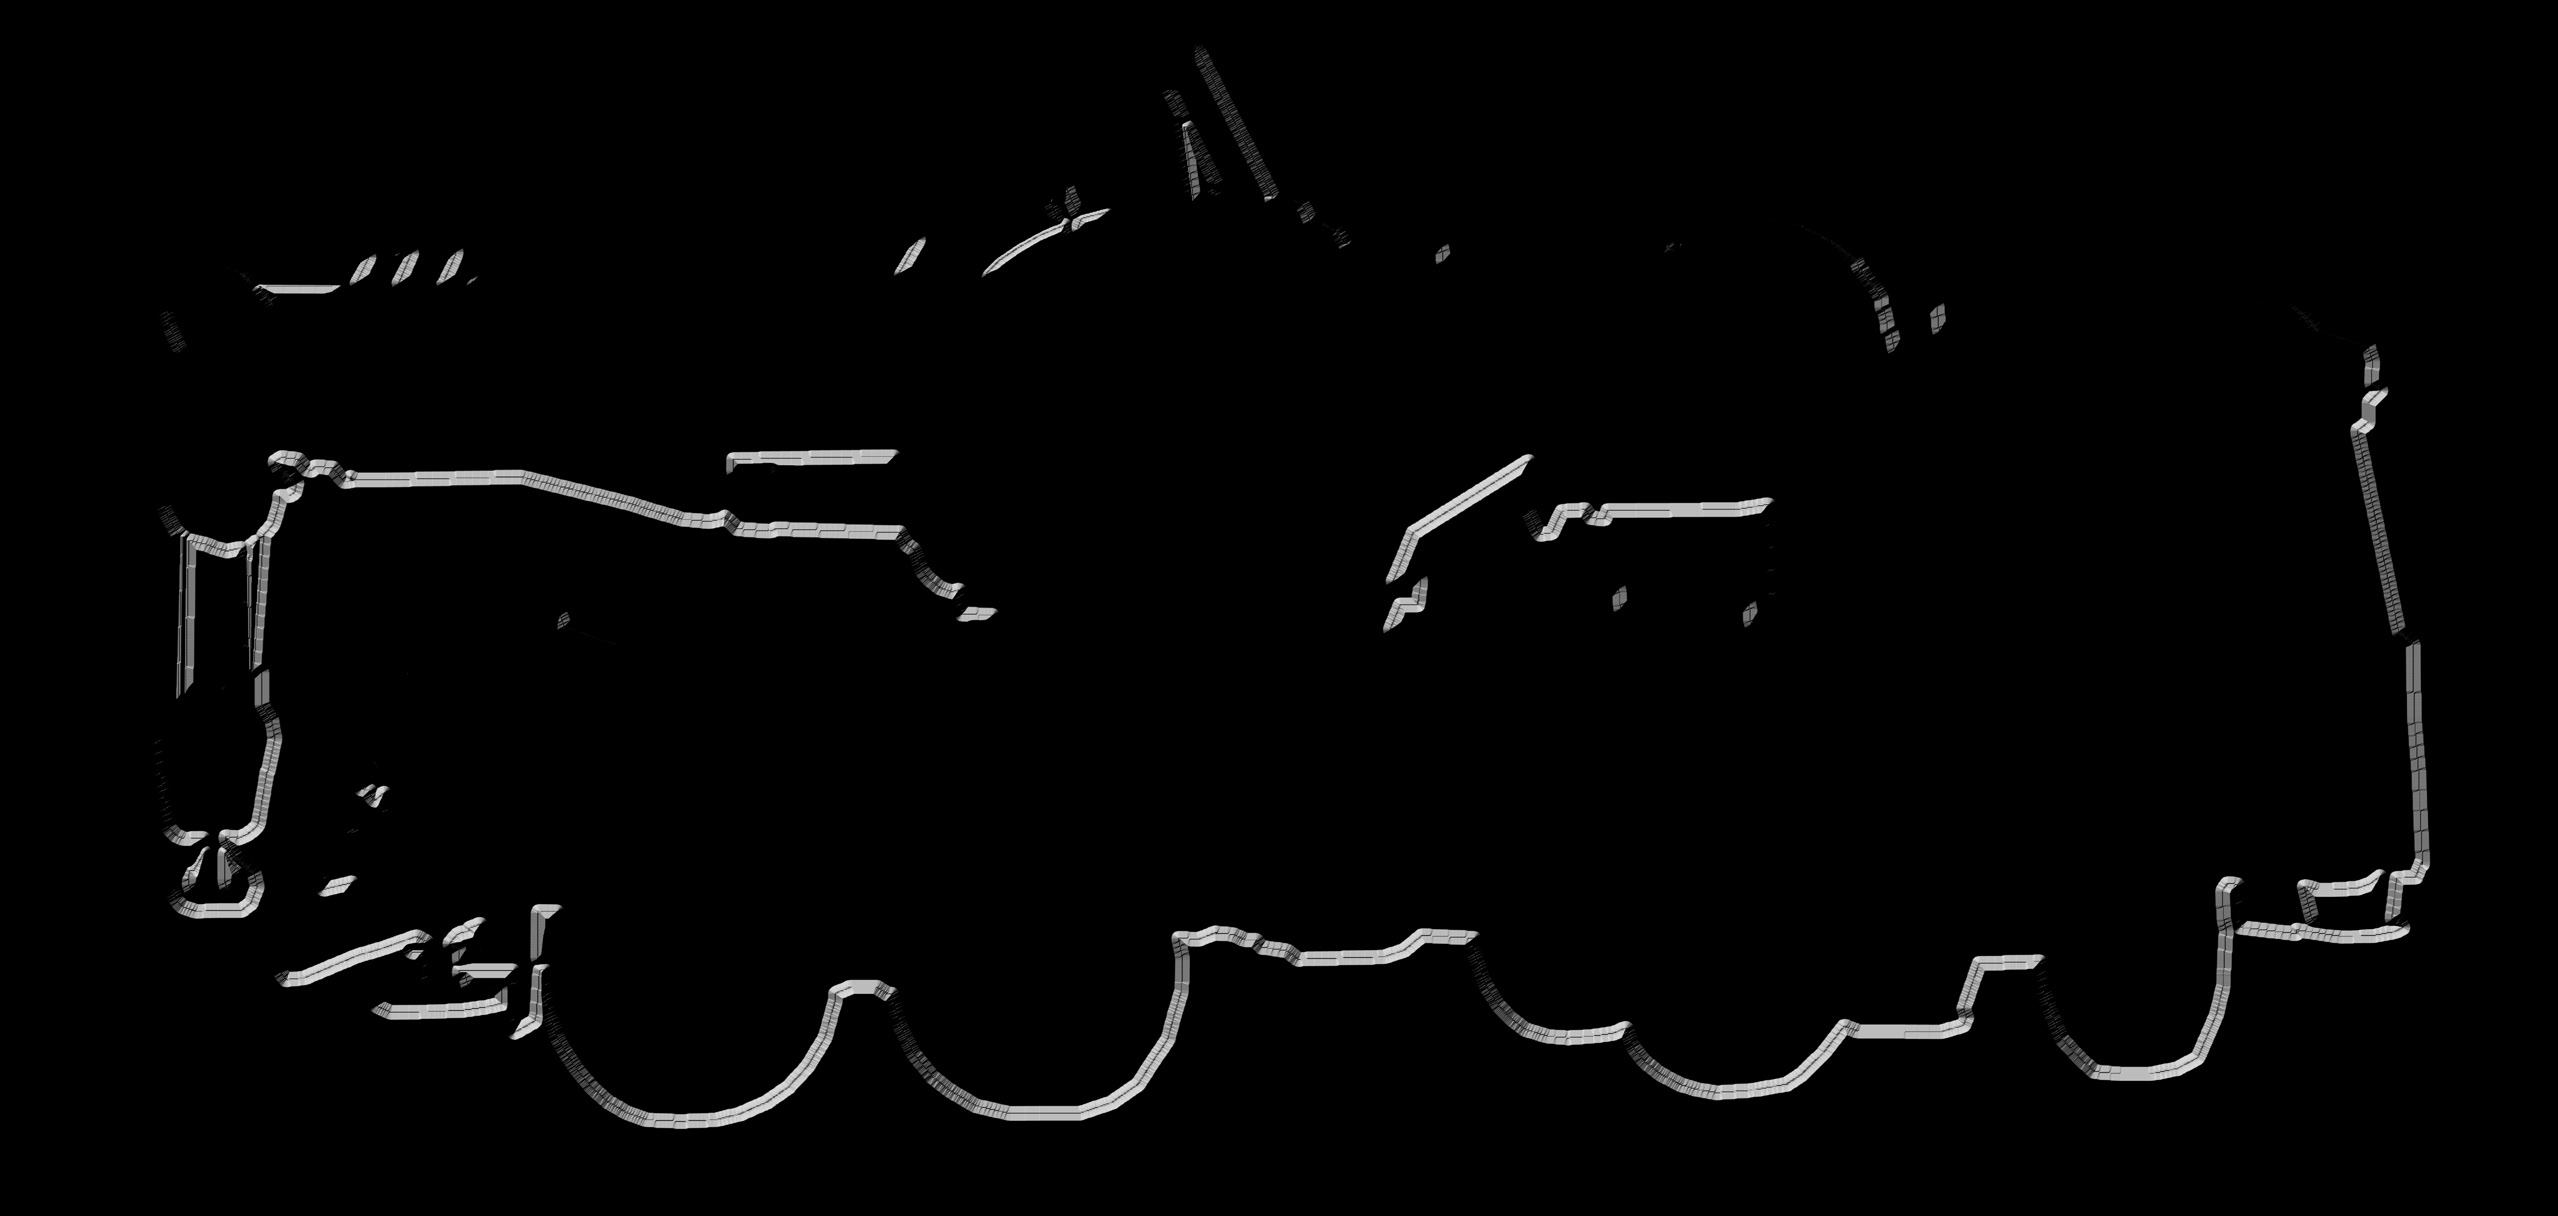 4 Piastre appoggio stabilizzatori in acciaio Verniciatura a richiesta Scaletta mobile per accesso in cabina di manovra Parafanghi posteriori e anteriori Copertura antisdrucciolevole sulle scatole